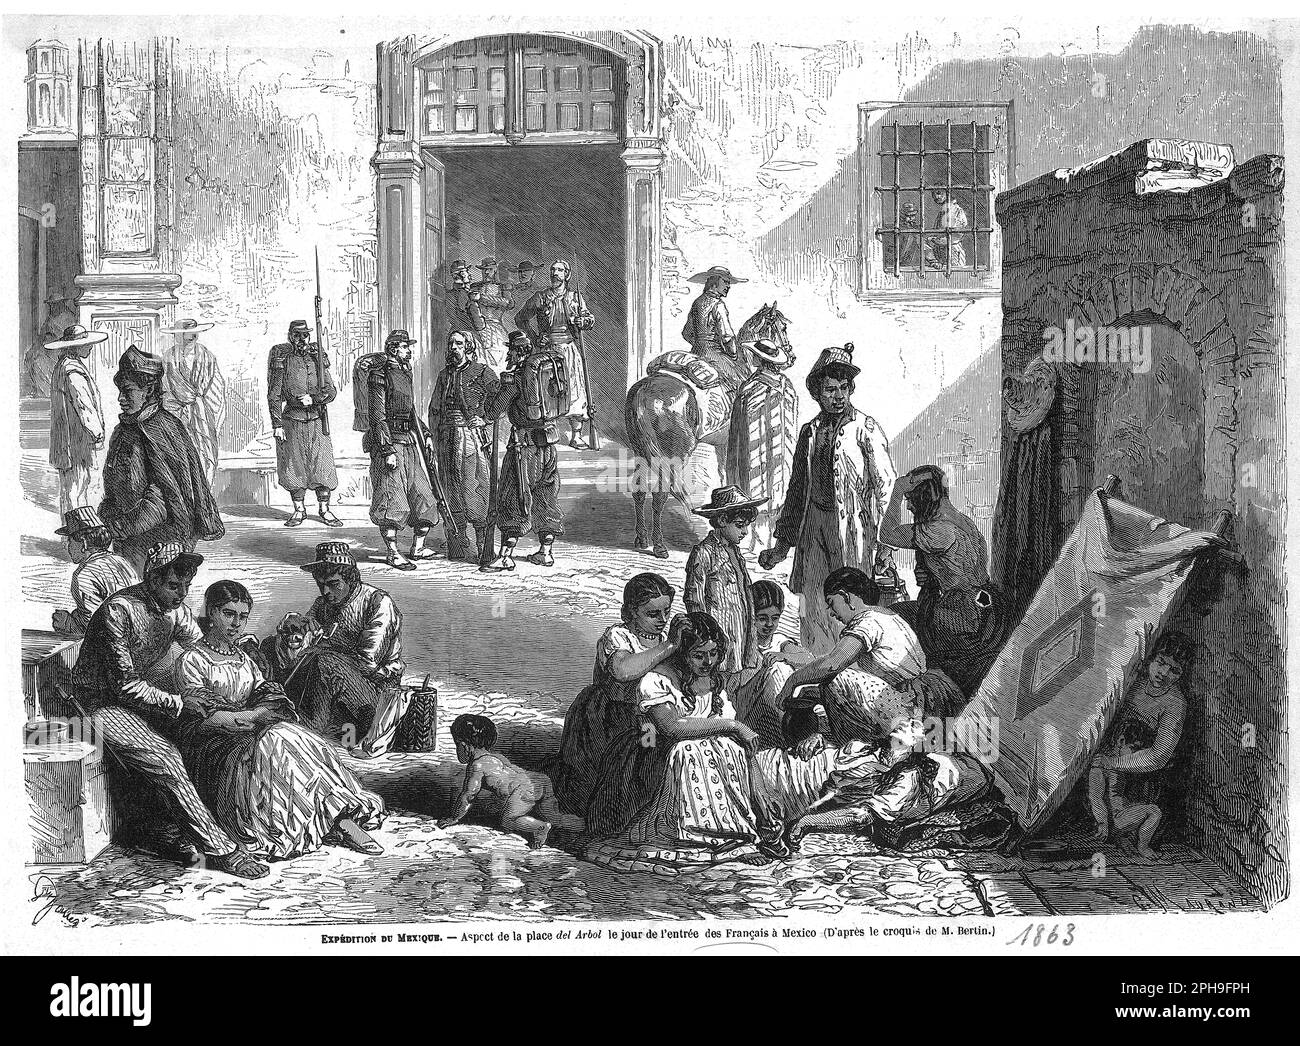 place Del Arbol à Mexico lors de l'entrée des troupes françaises en 1863 Stock Photo